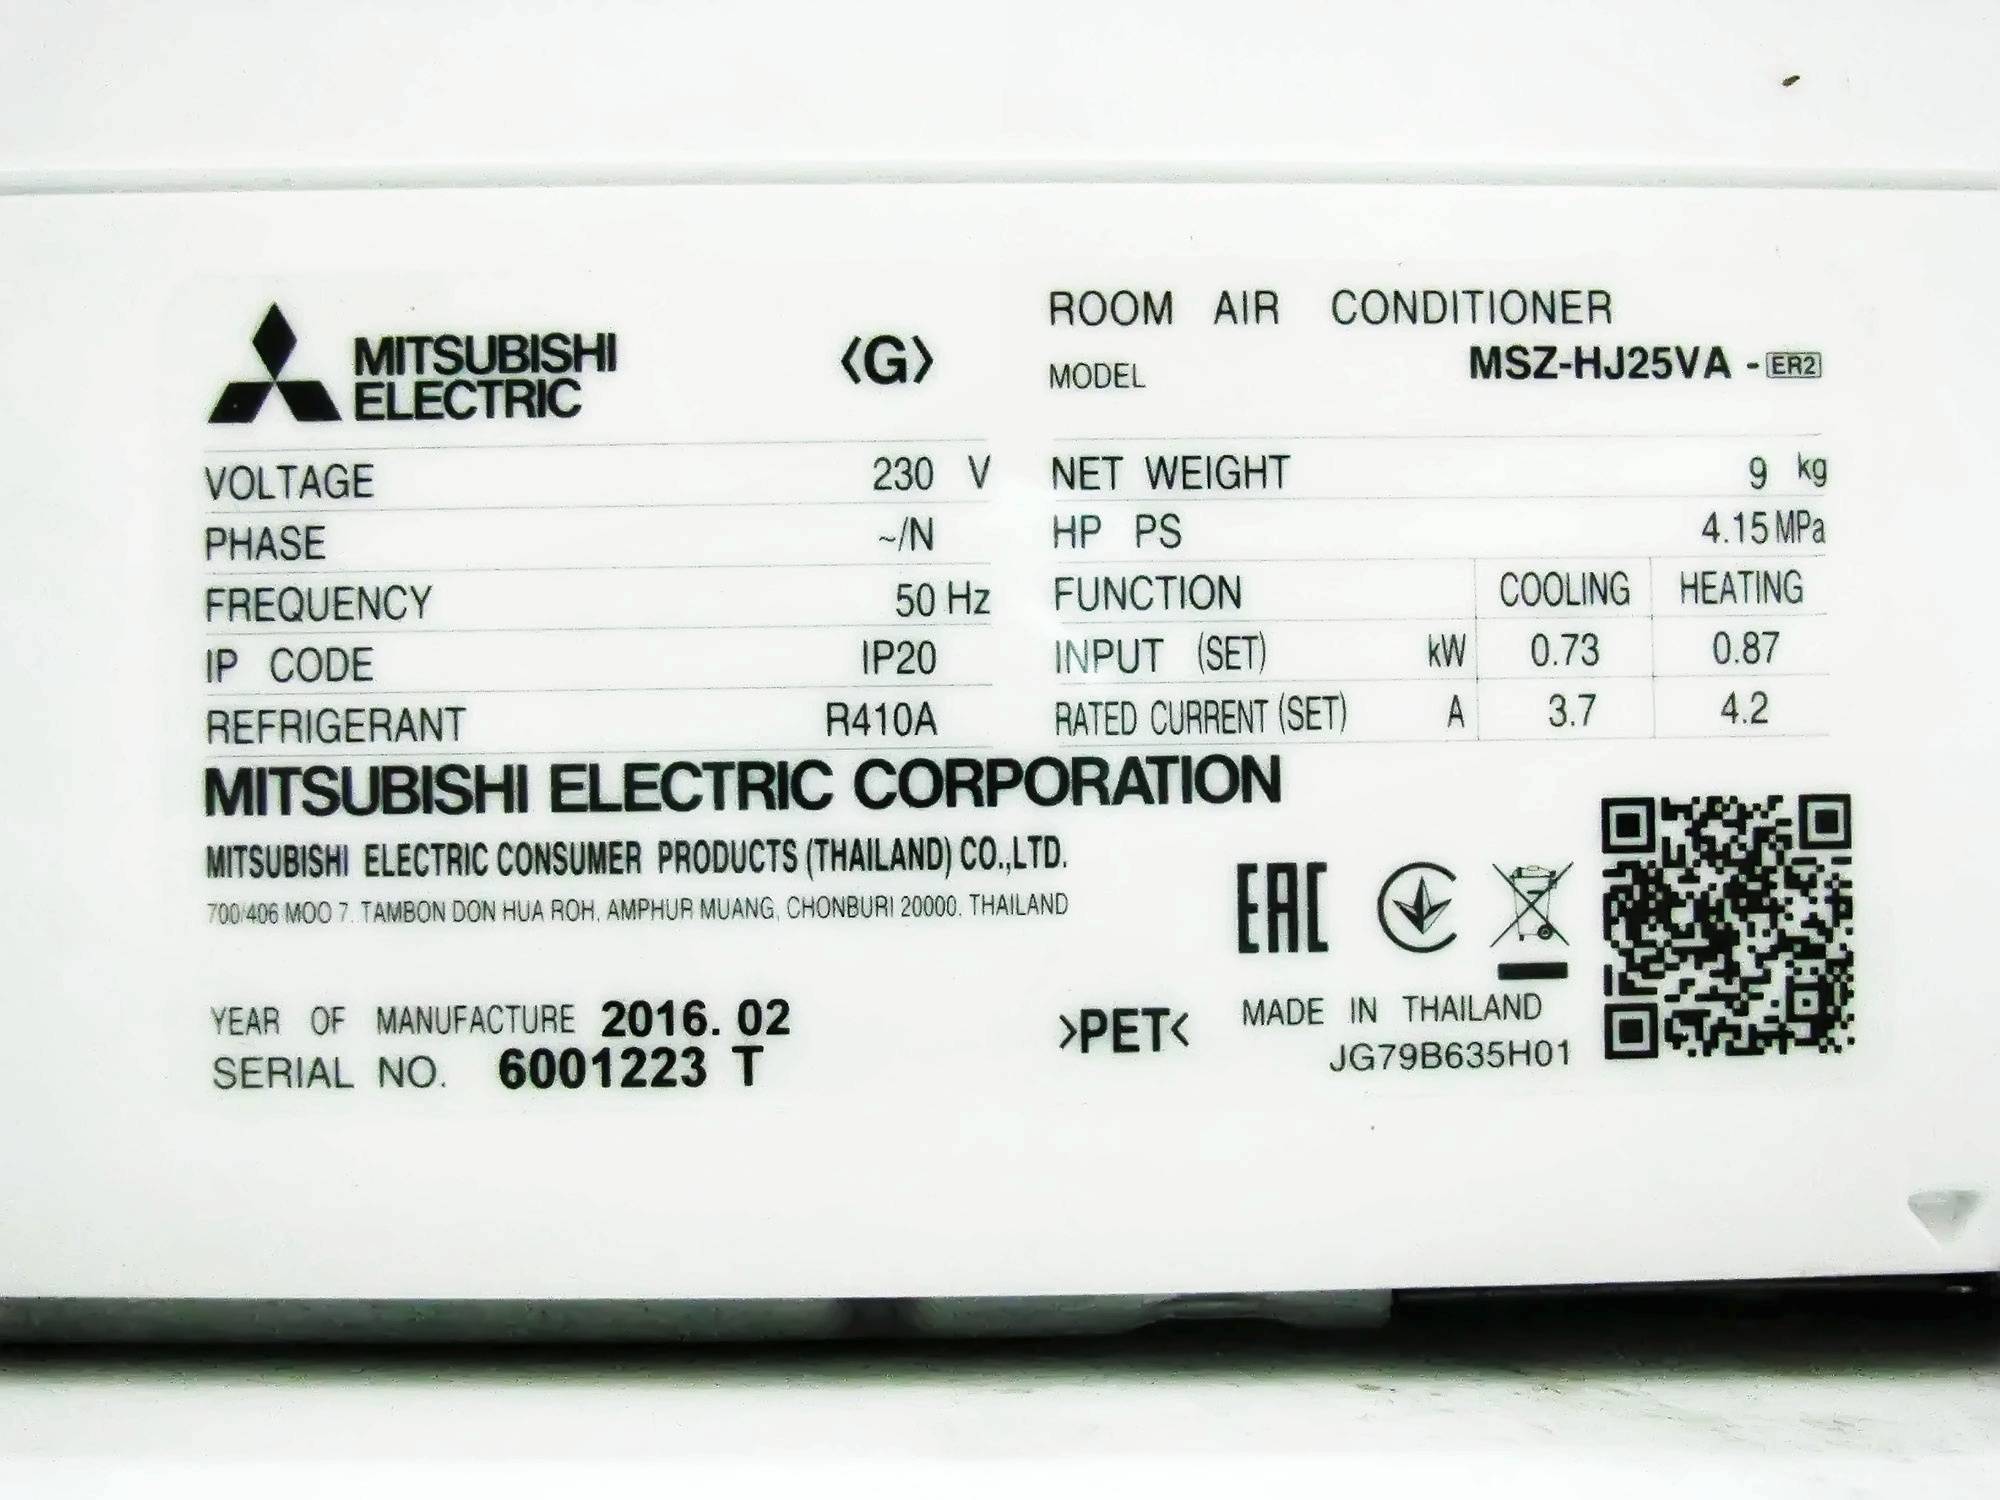 Кондиционер mitsubishi electric msz-ge25va/muz-ge25va(h) - полное описание, фото, инструкции, отзывы, технические характеристики